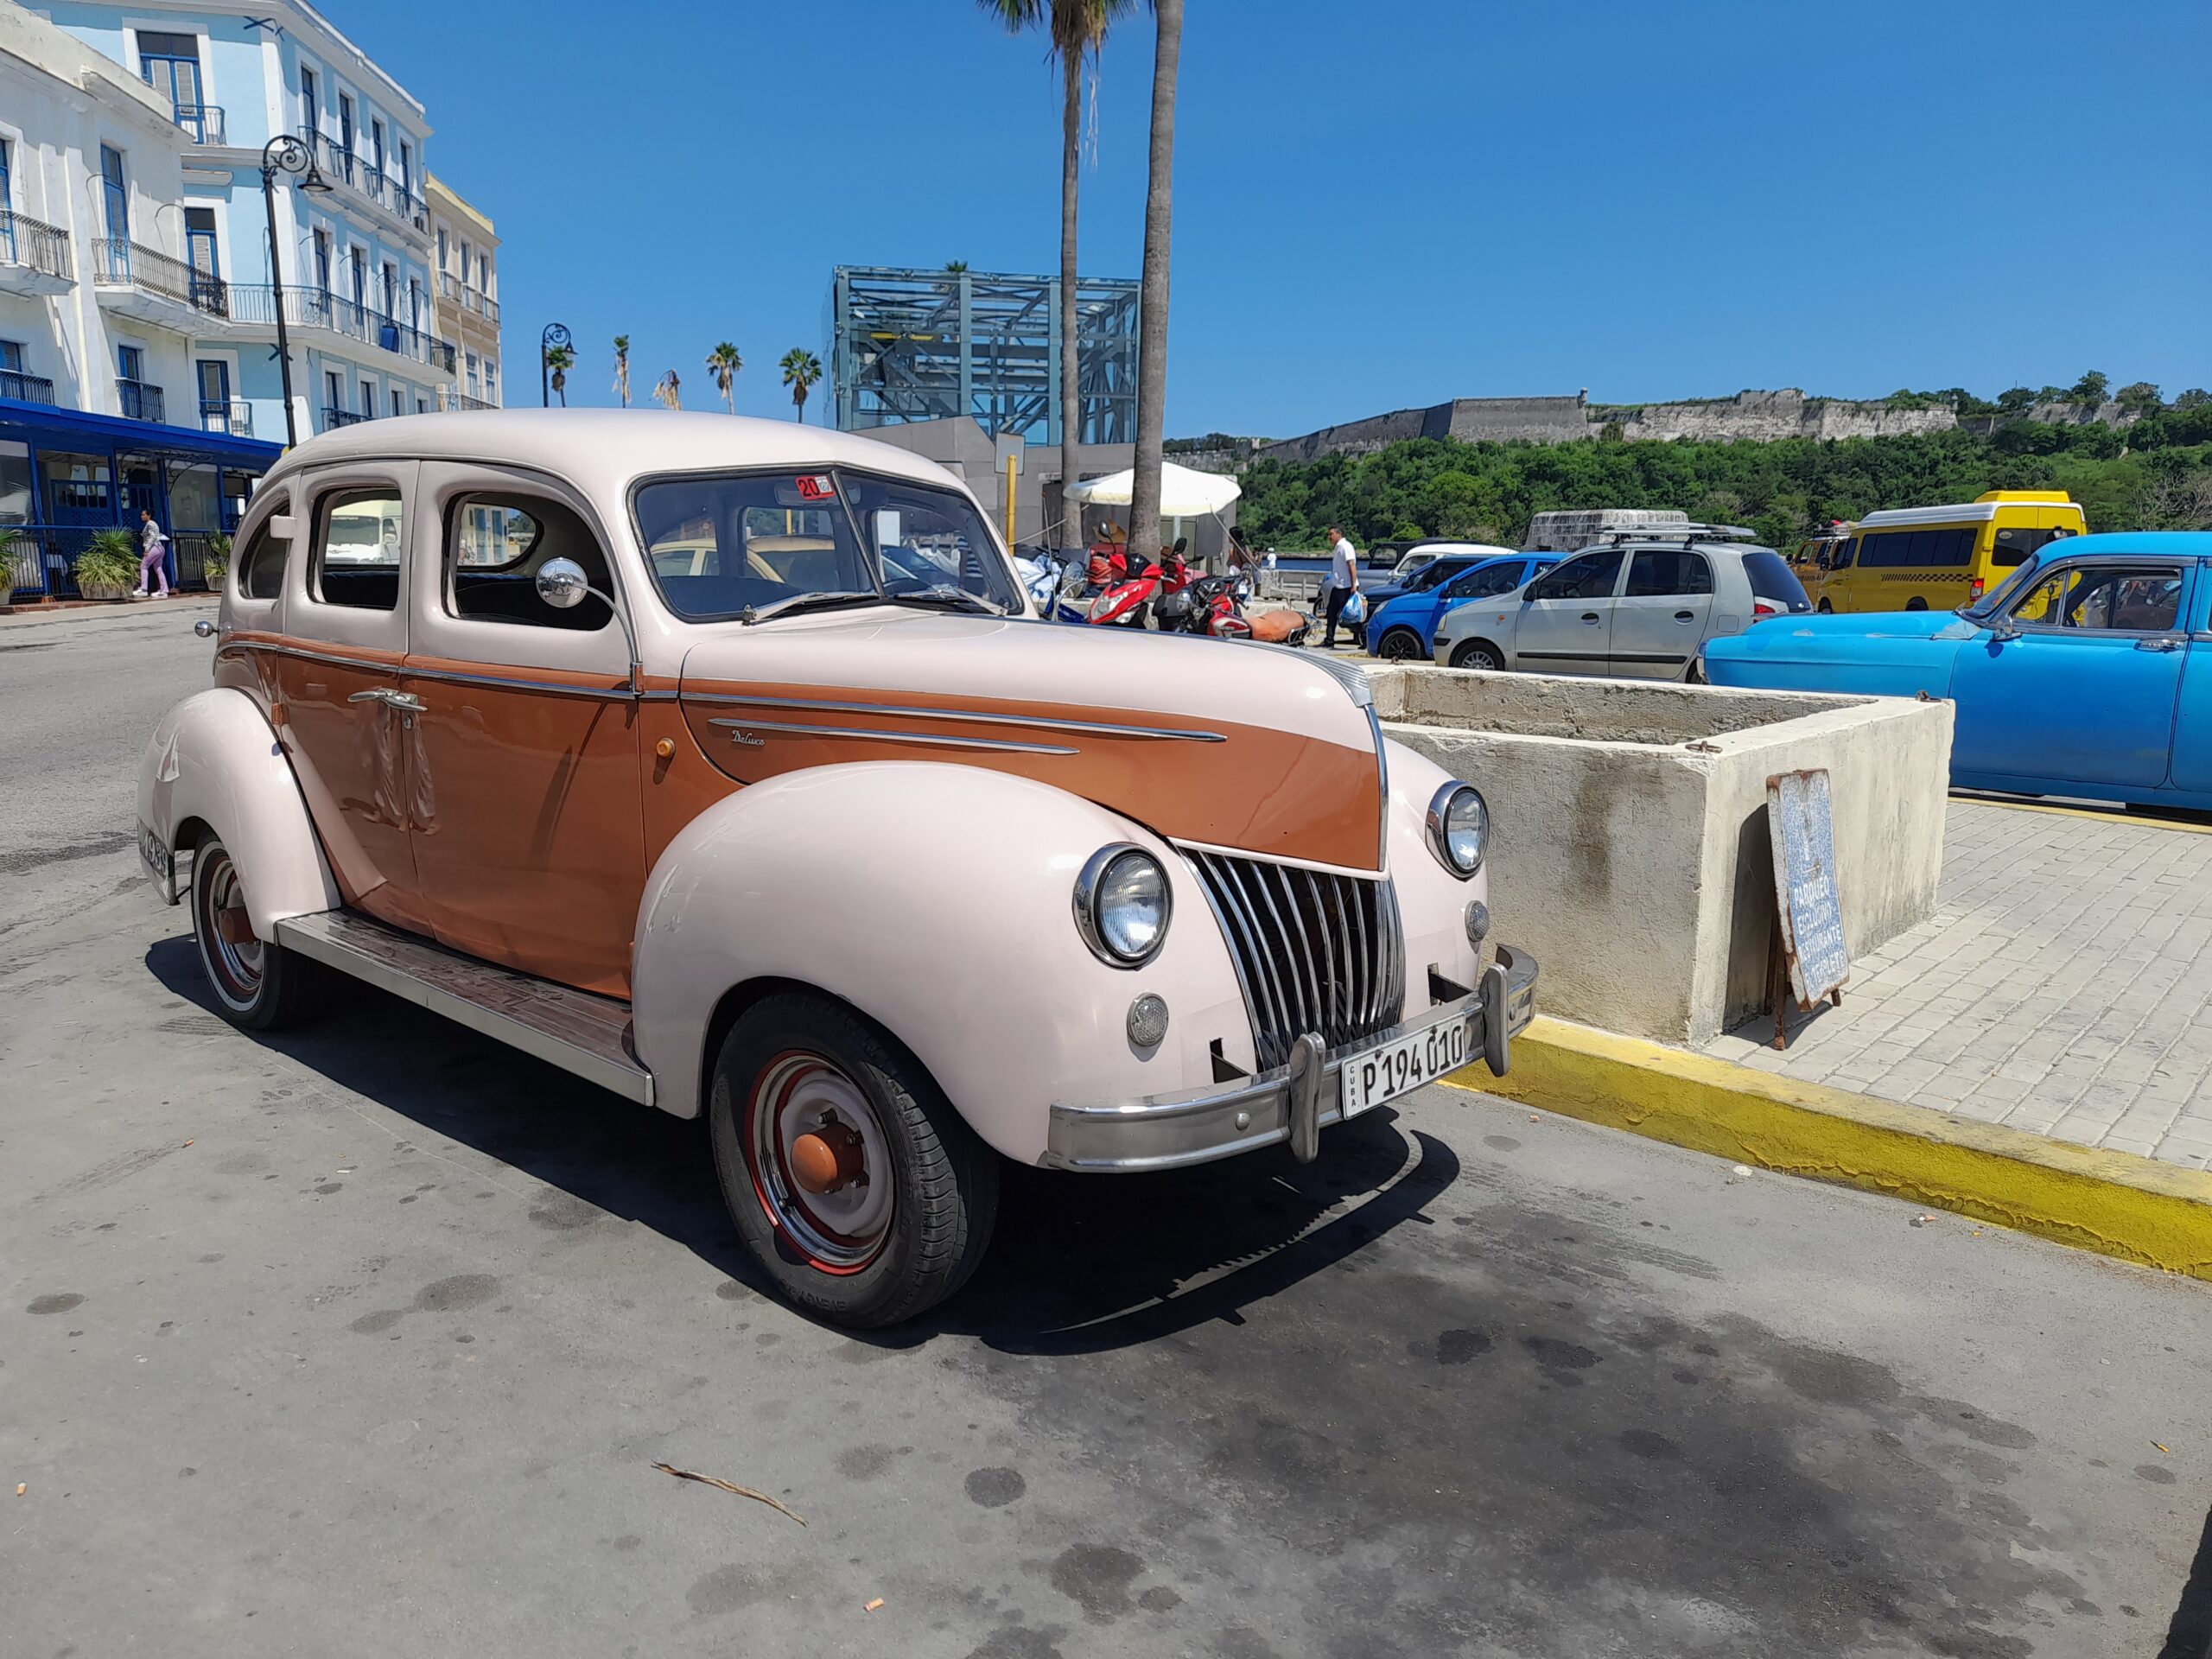 Renting a classic car in Cuba